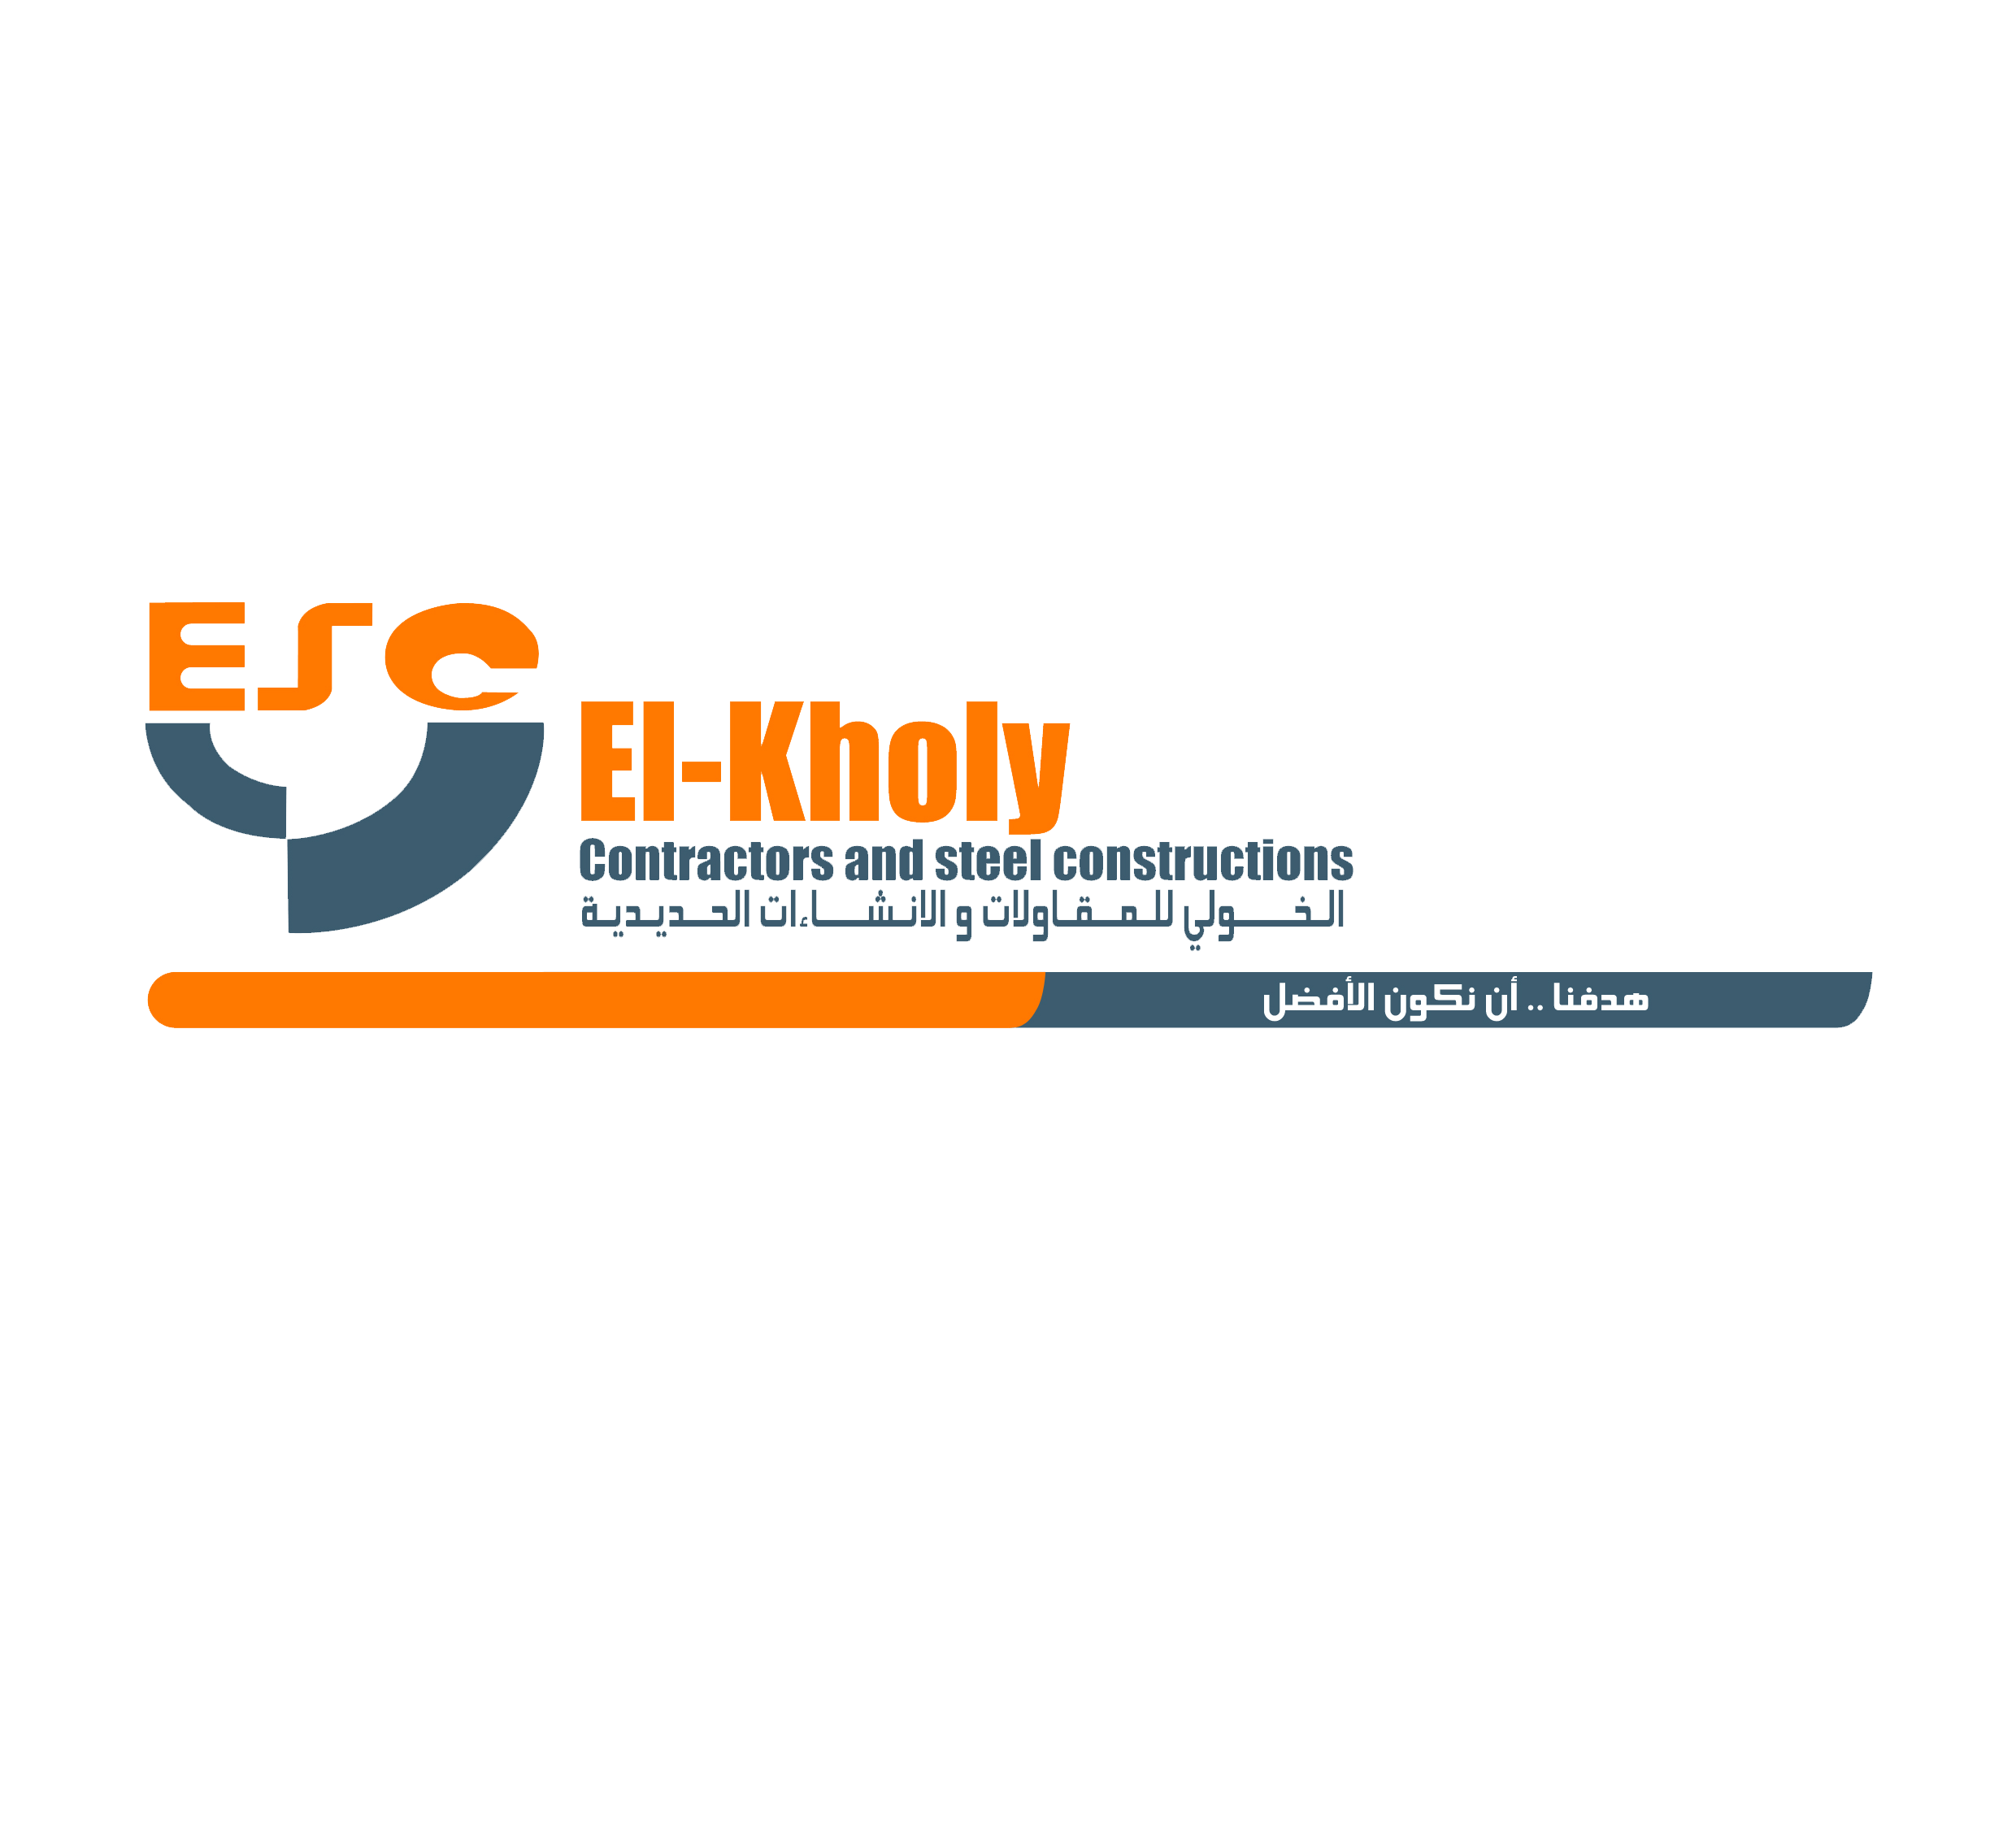 El-kholy contractors & steel construction company